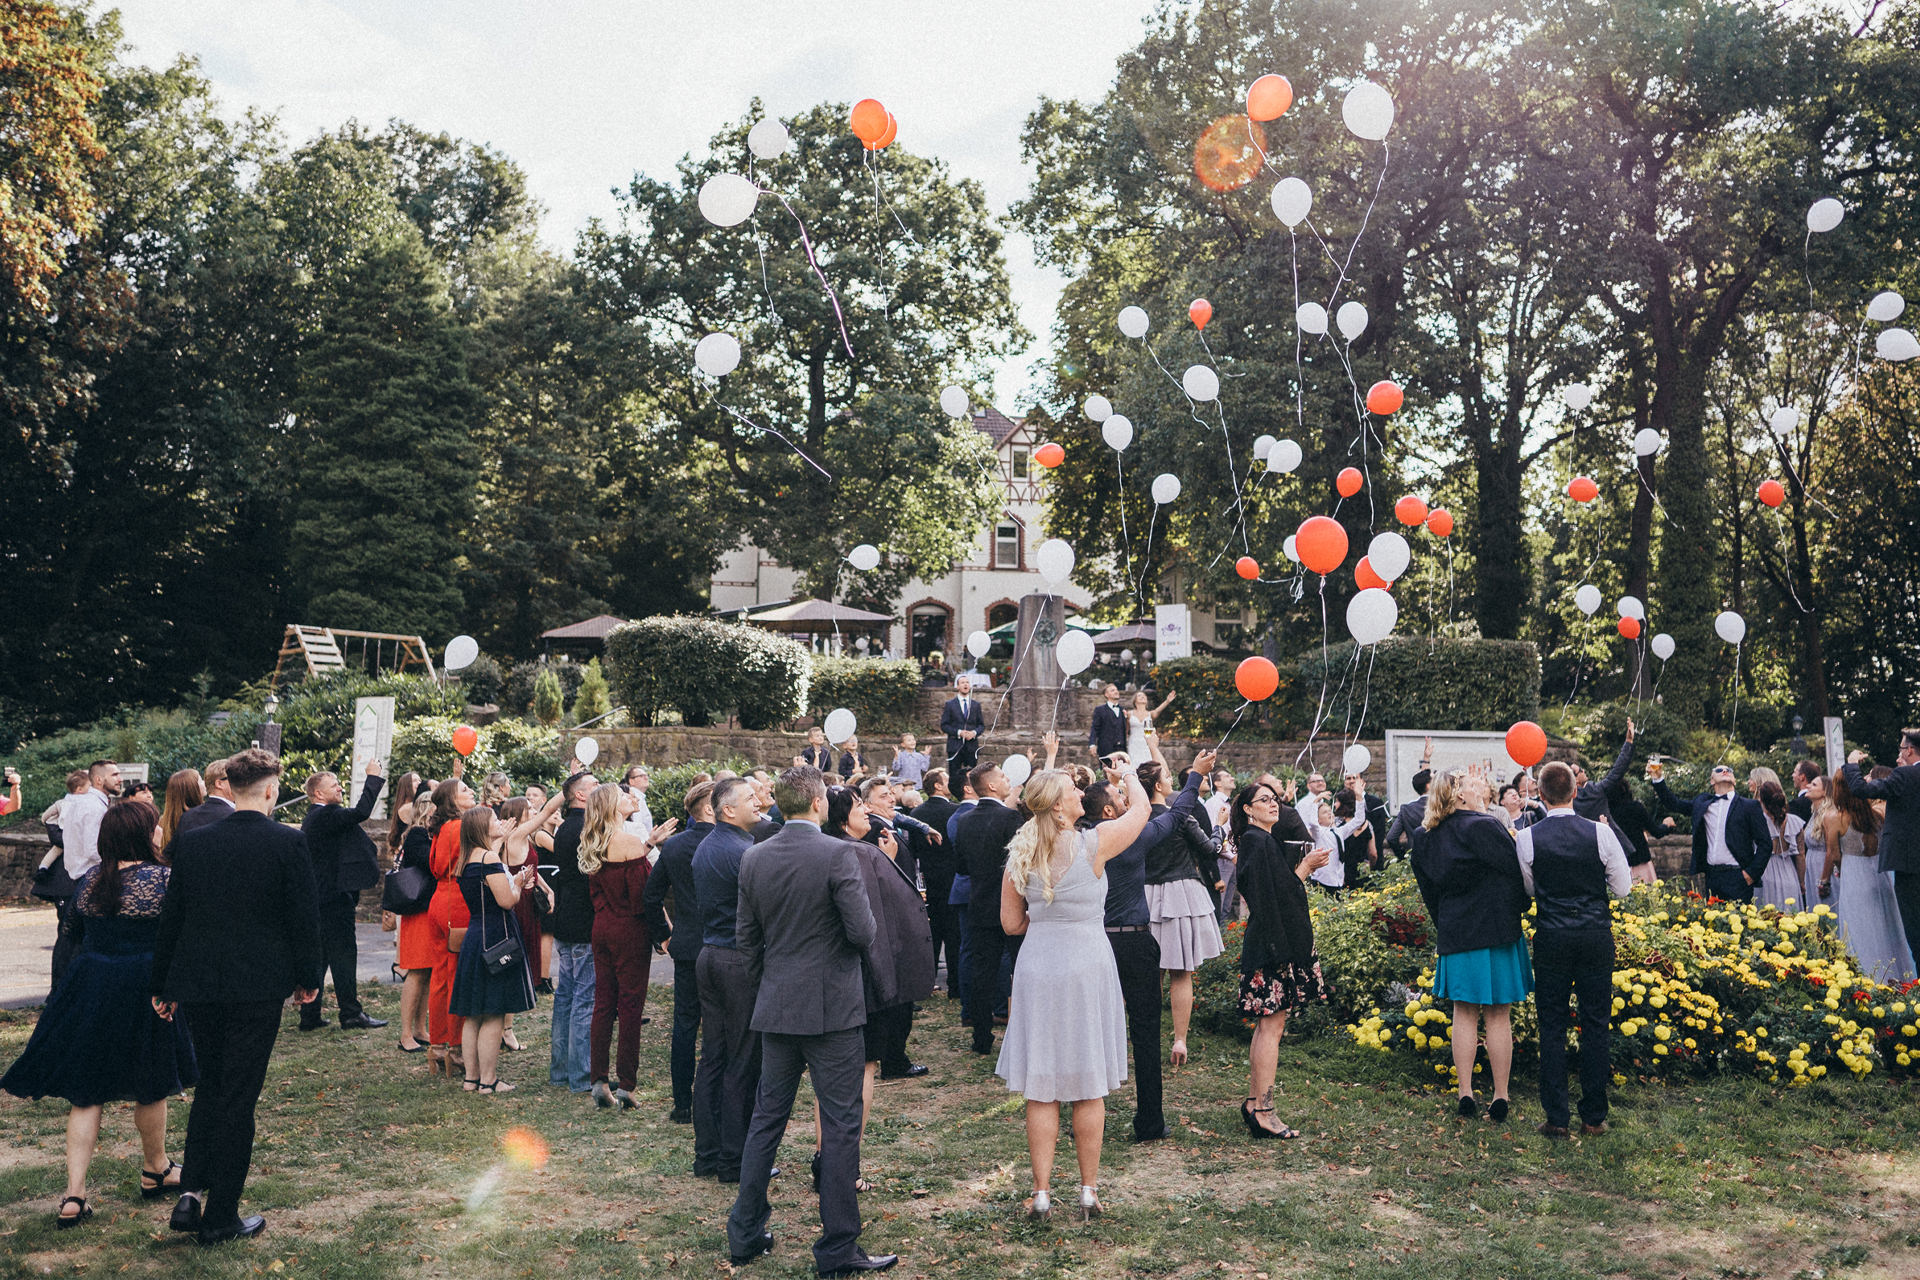 Hochzeitsgesellschaft lässt Ballons steigen - Rote und weiße Luftballons zur Hochzeitsfeier - Hochzeitsreportage in Dortmund - Chris Reuter Hochzeitsfotograf